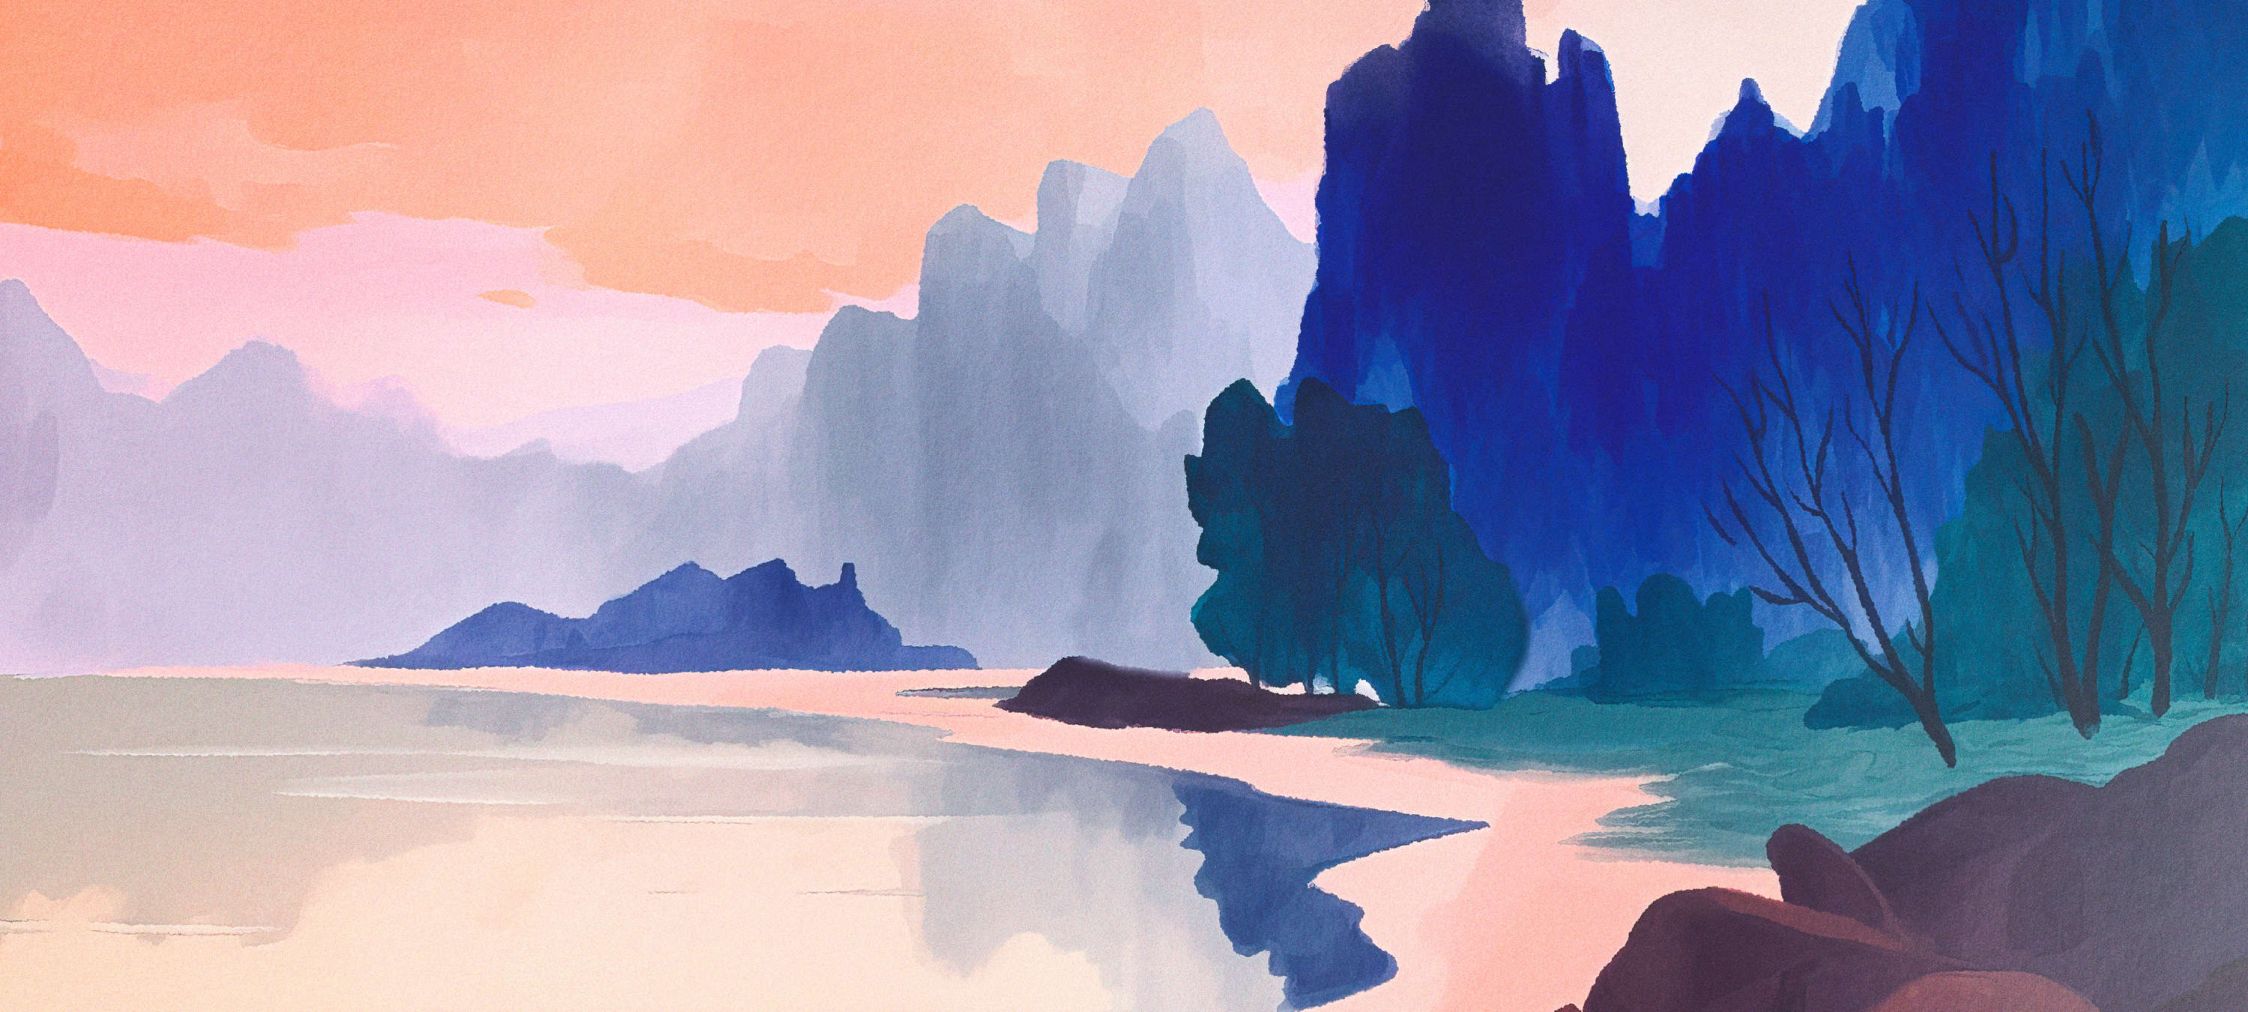             papier peint en papier panoramique »aurora« - Paysage avec lac au coucher du soleil - bleu, rose | Intissé lisse, légèrement nacré
        